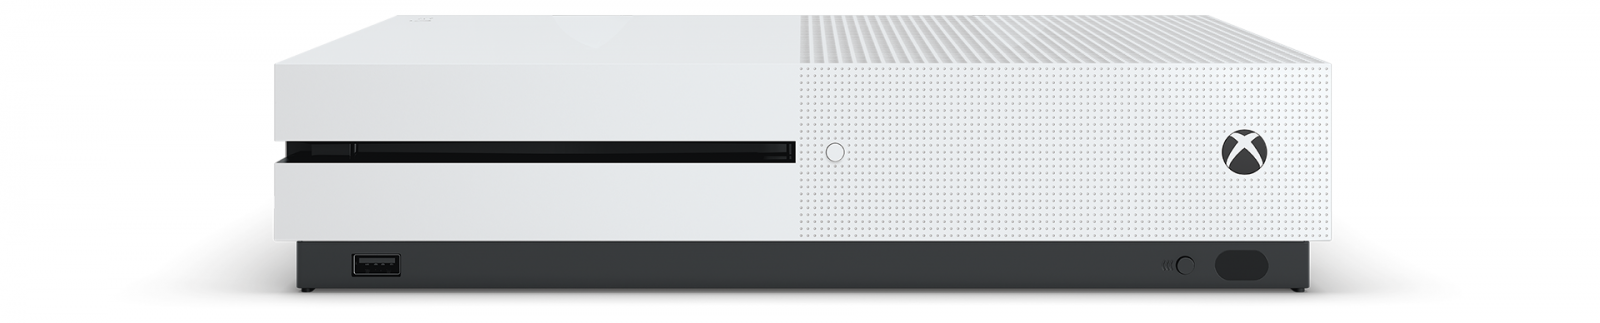 Xbox One S 2TB image1